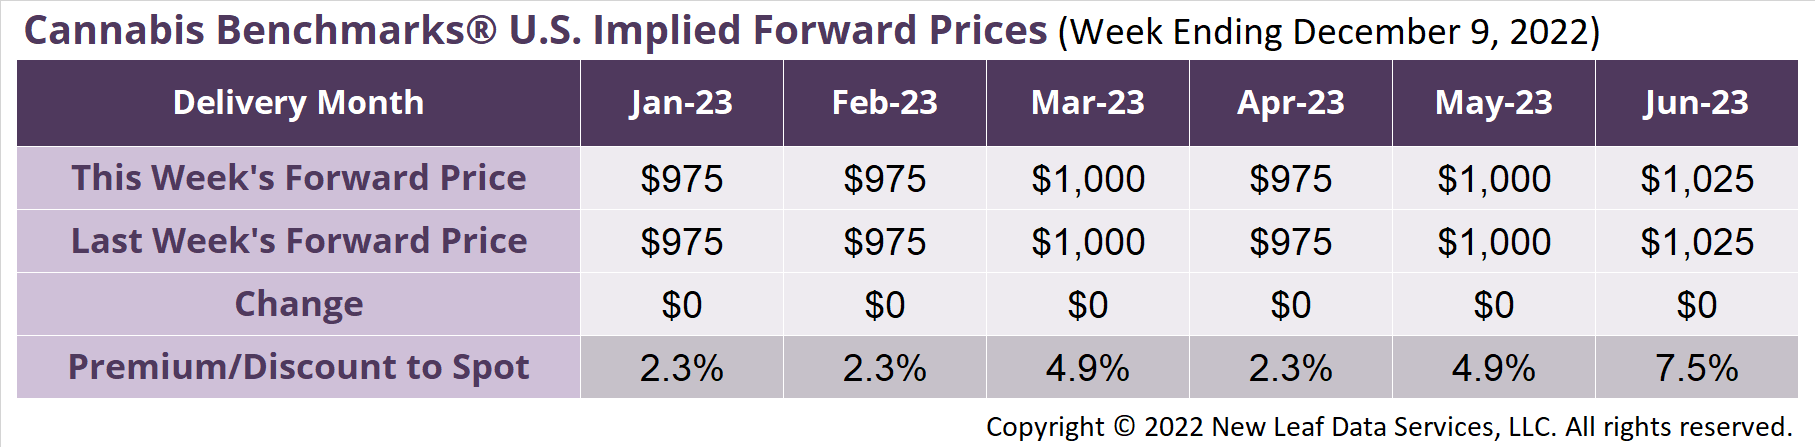 CB US Forward Price Assessment December 9, 2022